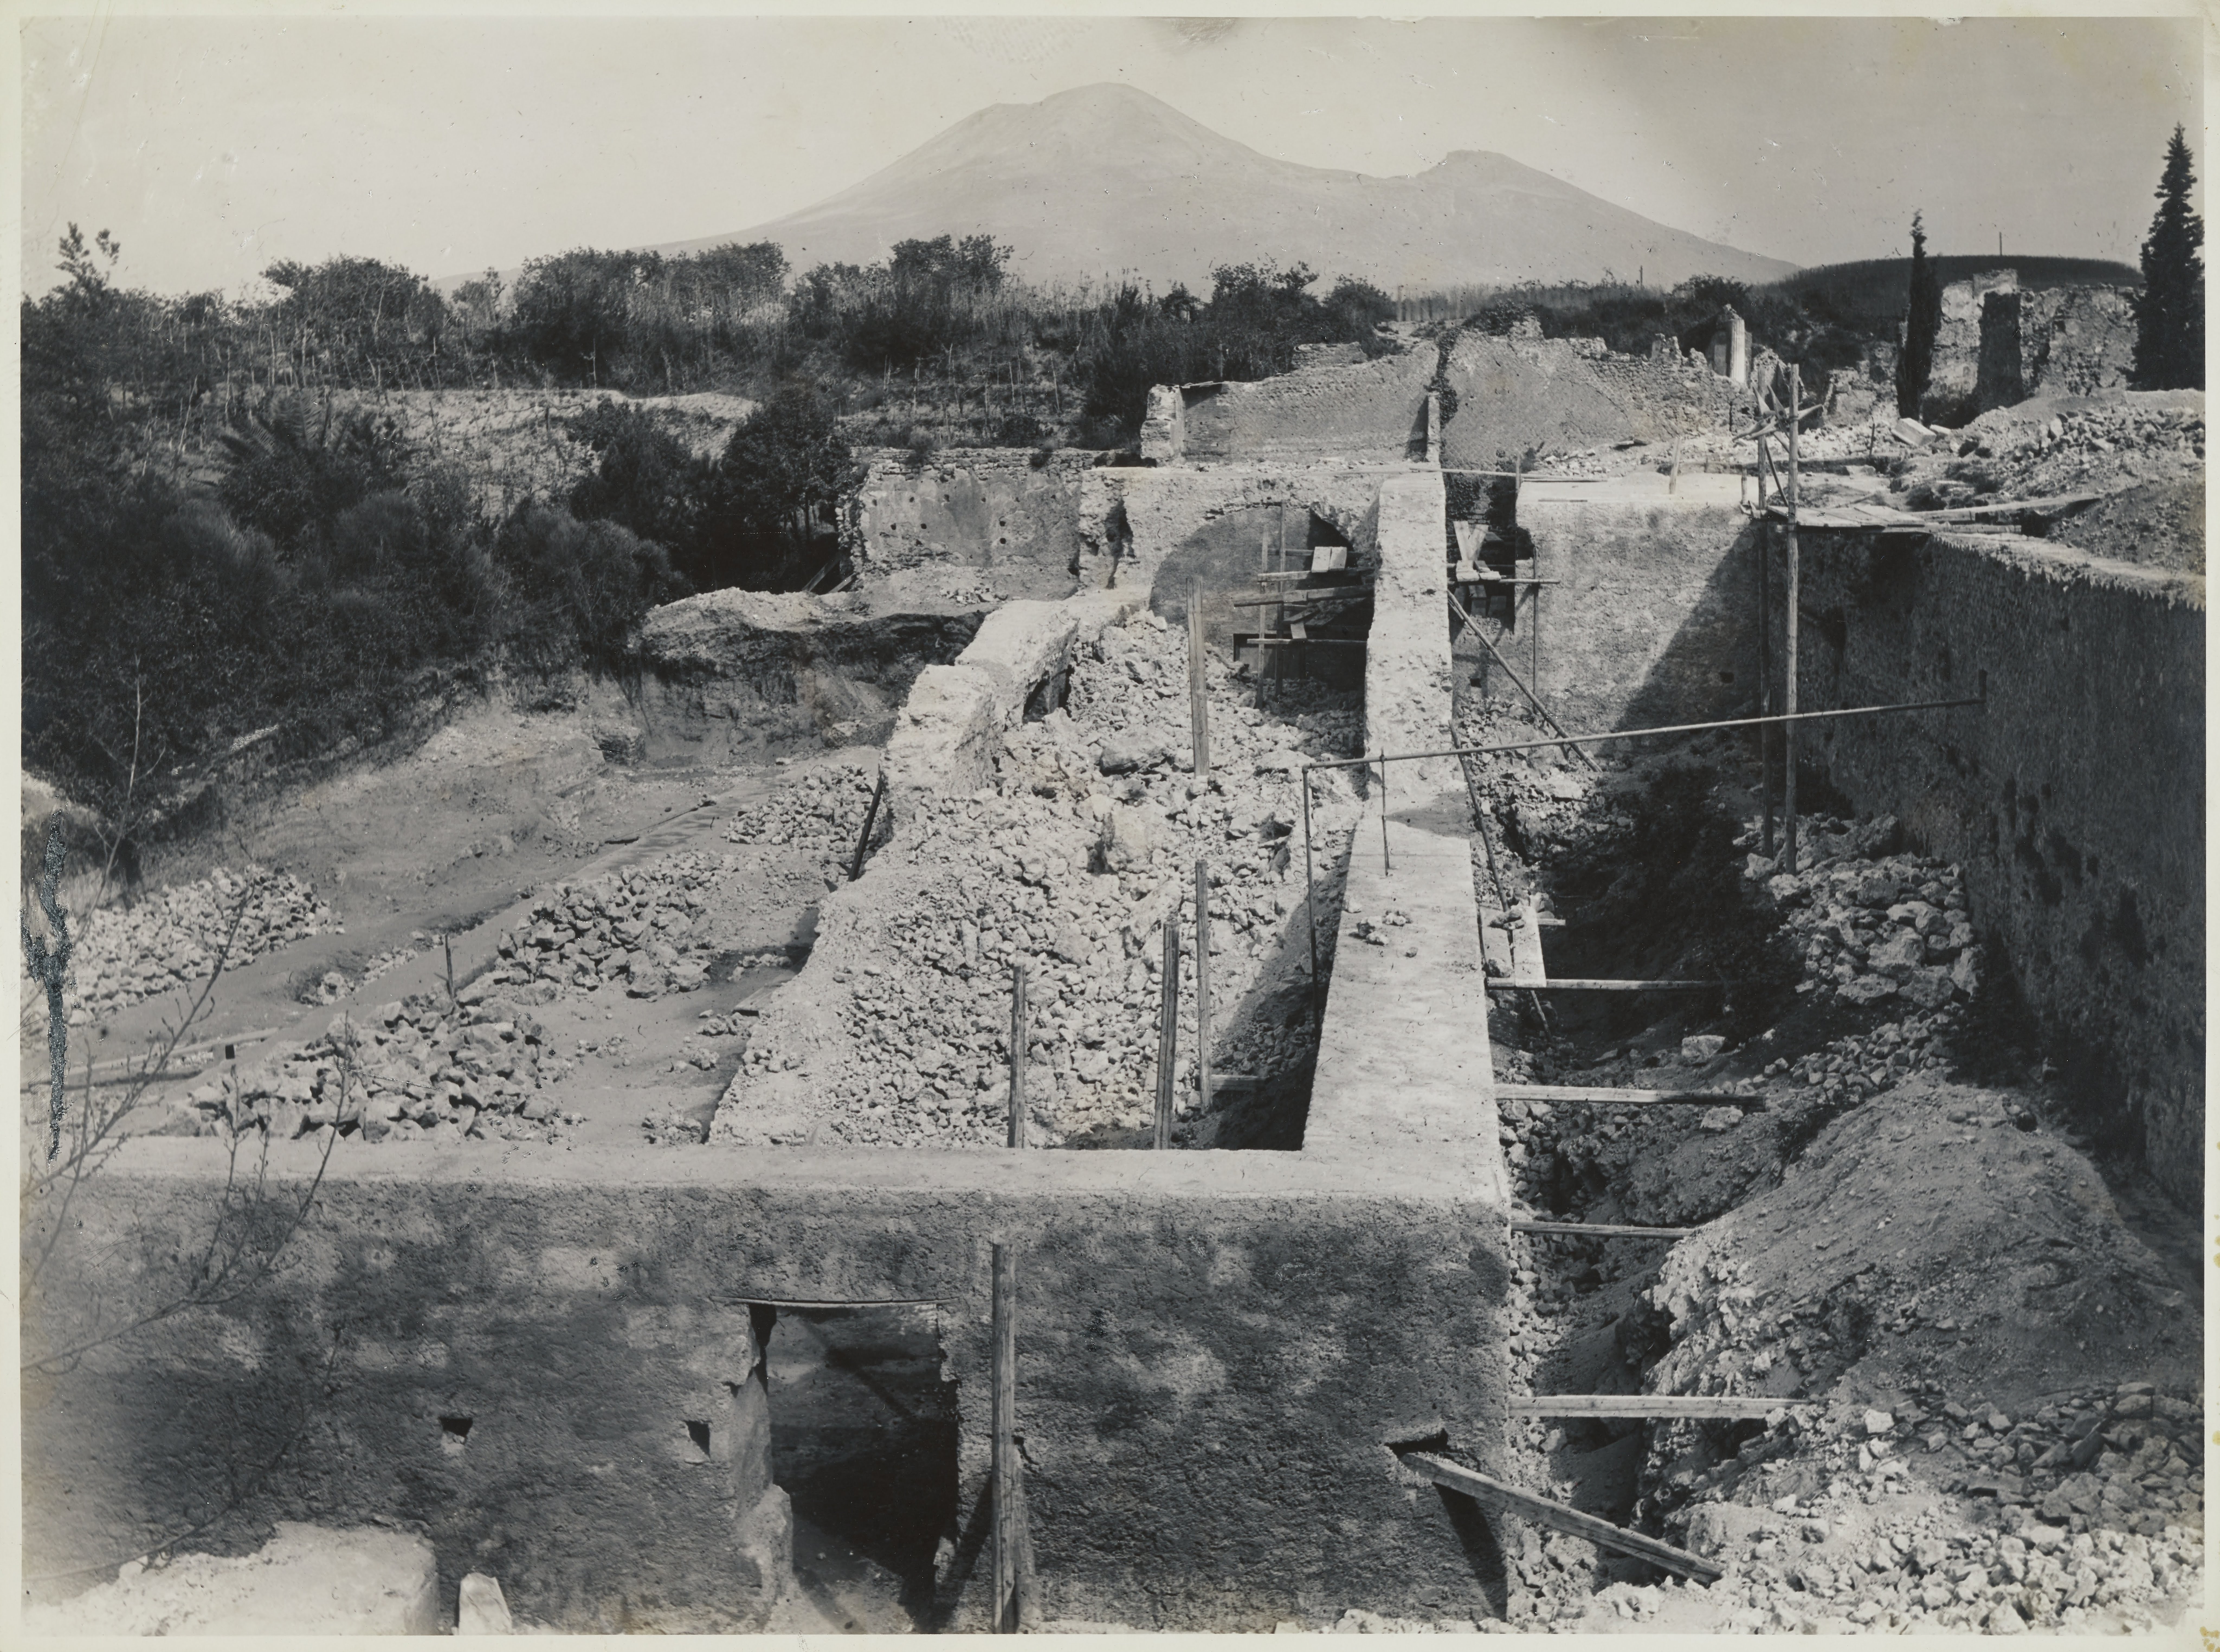 Fotografo non identificato, Pompei - Scavi archeologici, Antiquarium durante i lavori di restauro, 1941-1960, gelatina ai sali d'argento, MPI6059584